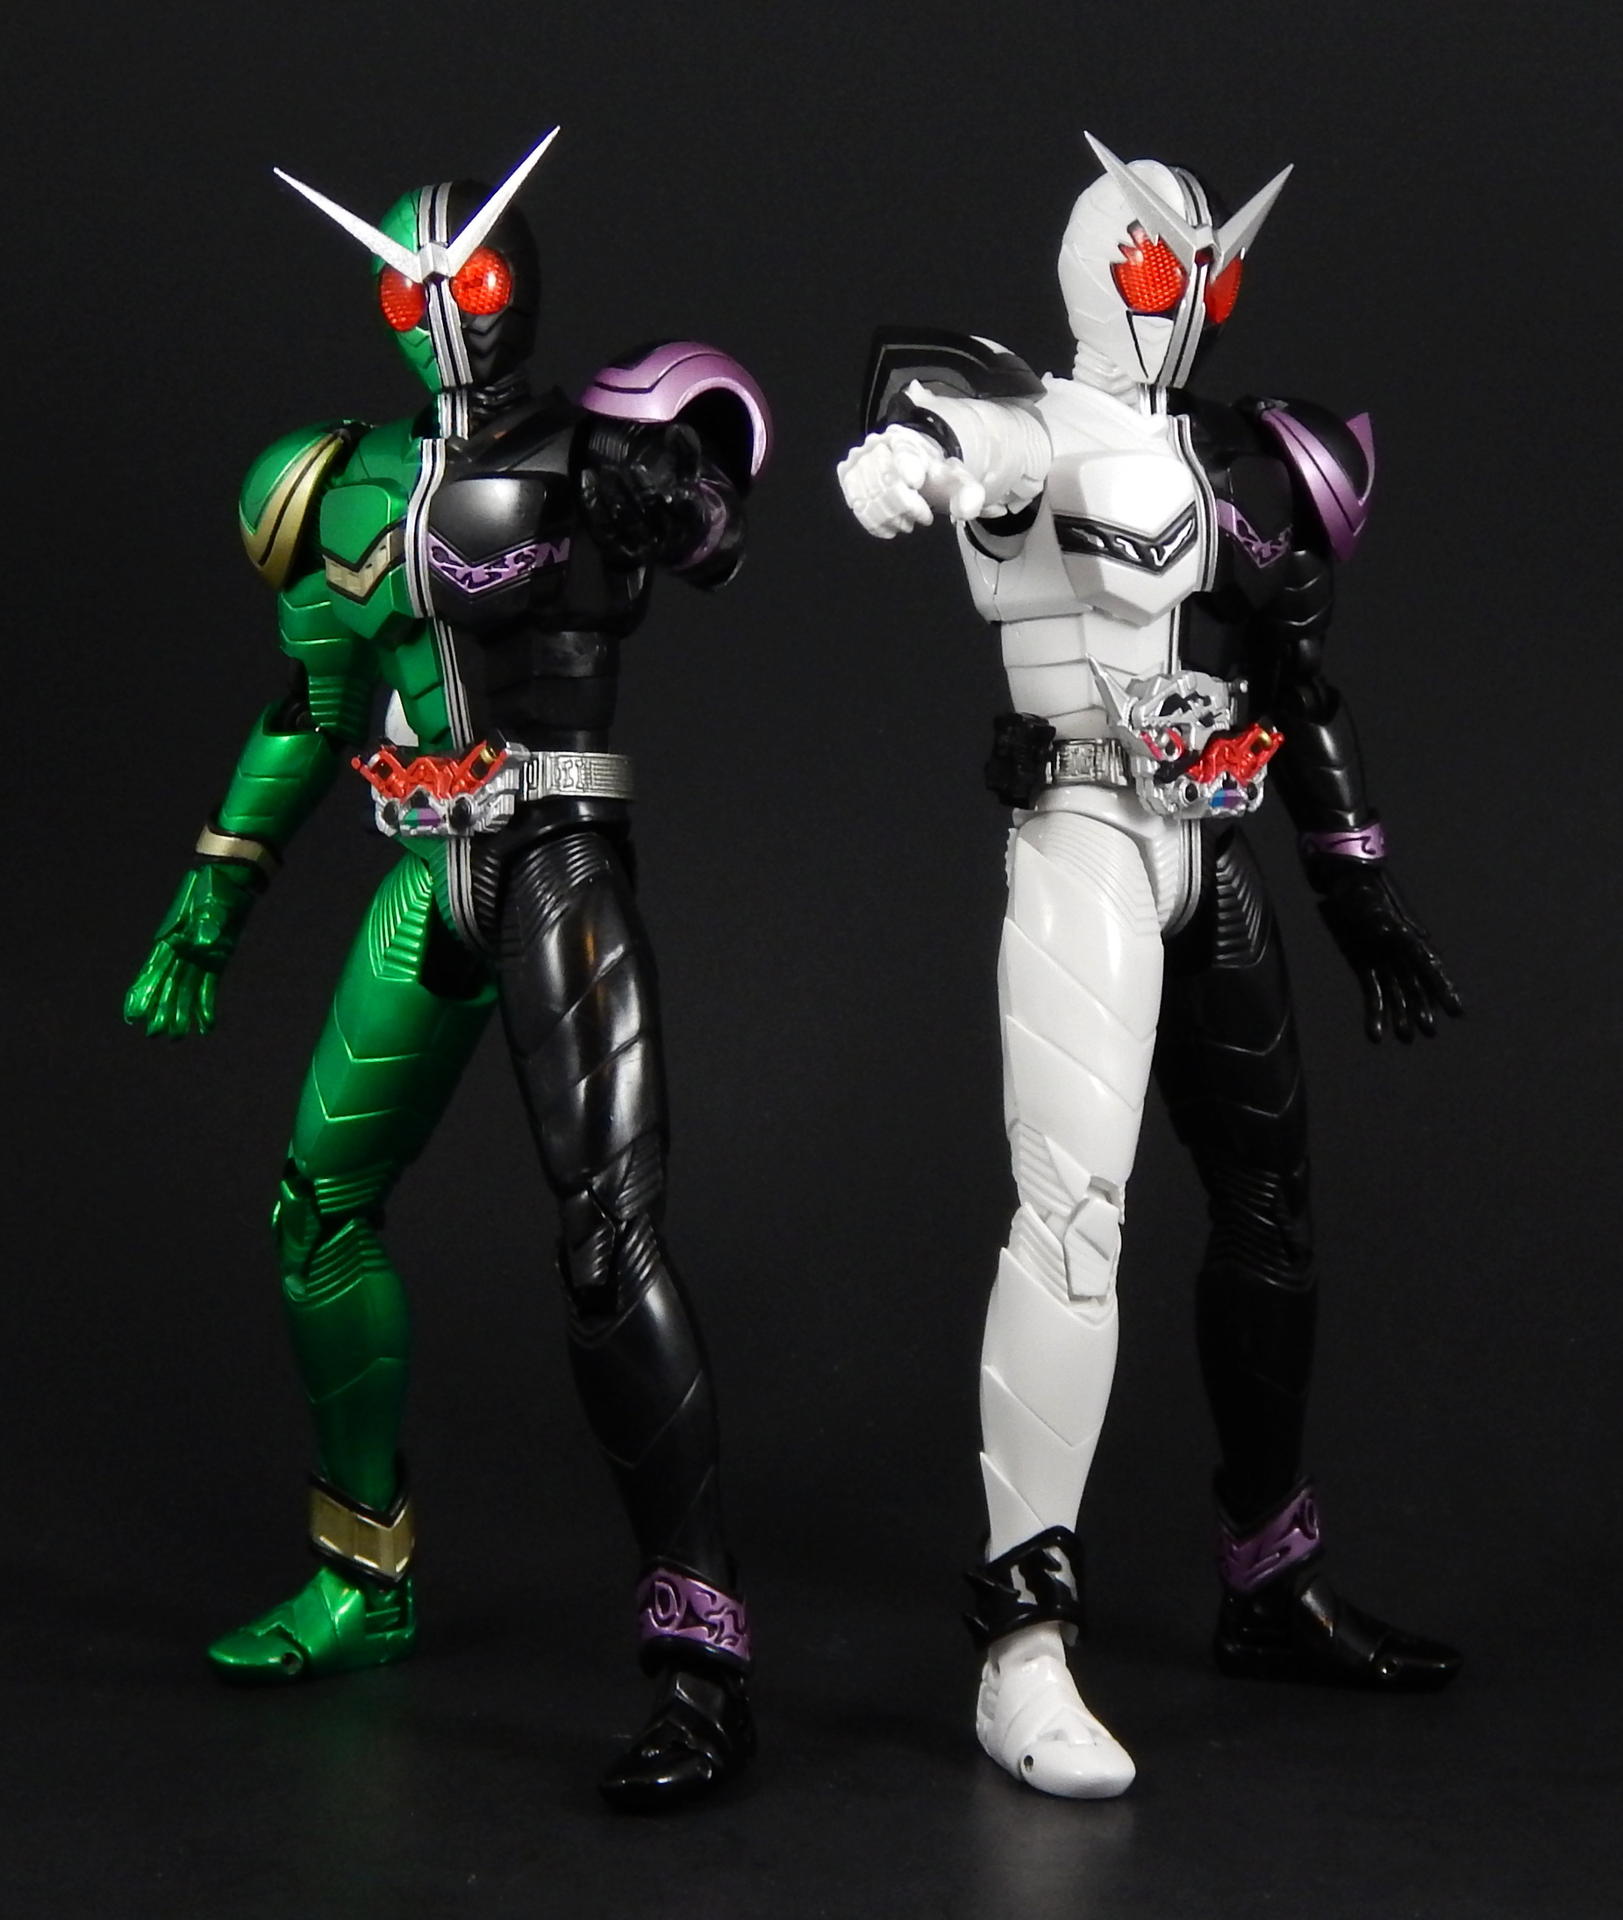 S.H. Figuarts Kamen Rider W Cyclone/Joker Gallery - Tokunation